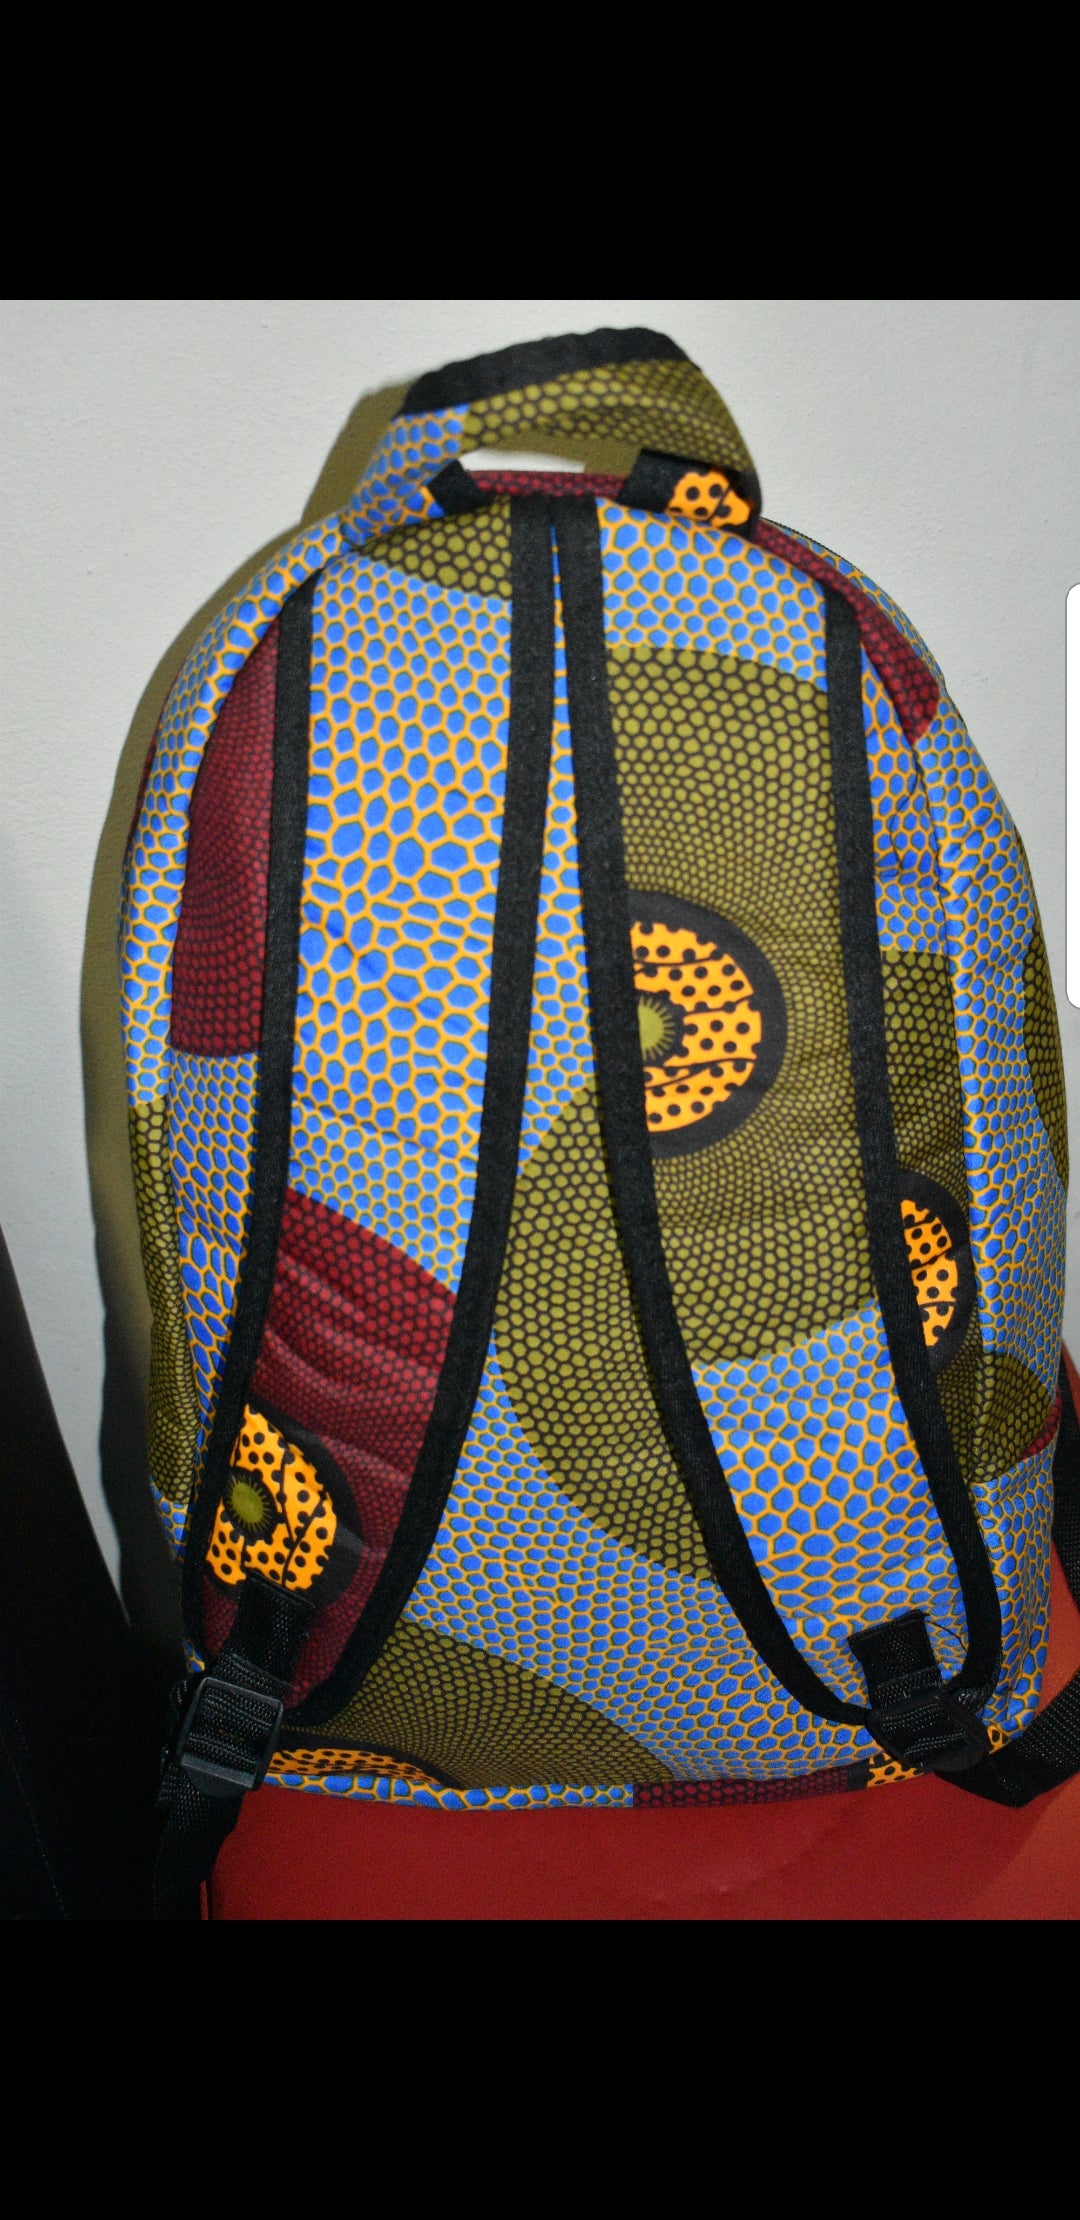 Lashibi Laptop Backpacks (With Mask) by Tribe Afrique Tribe Afrique